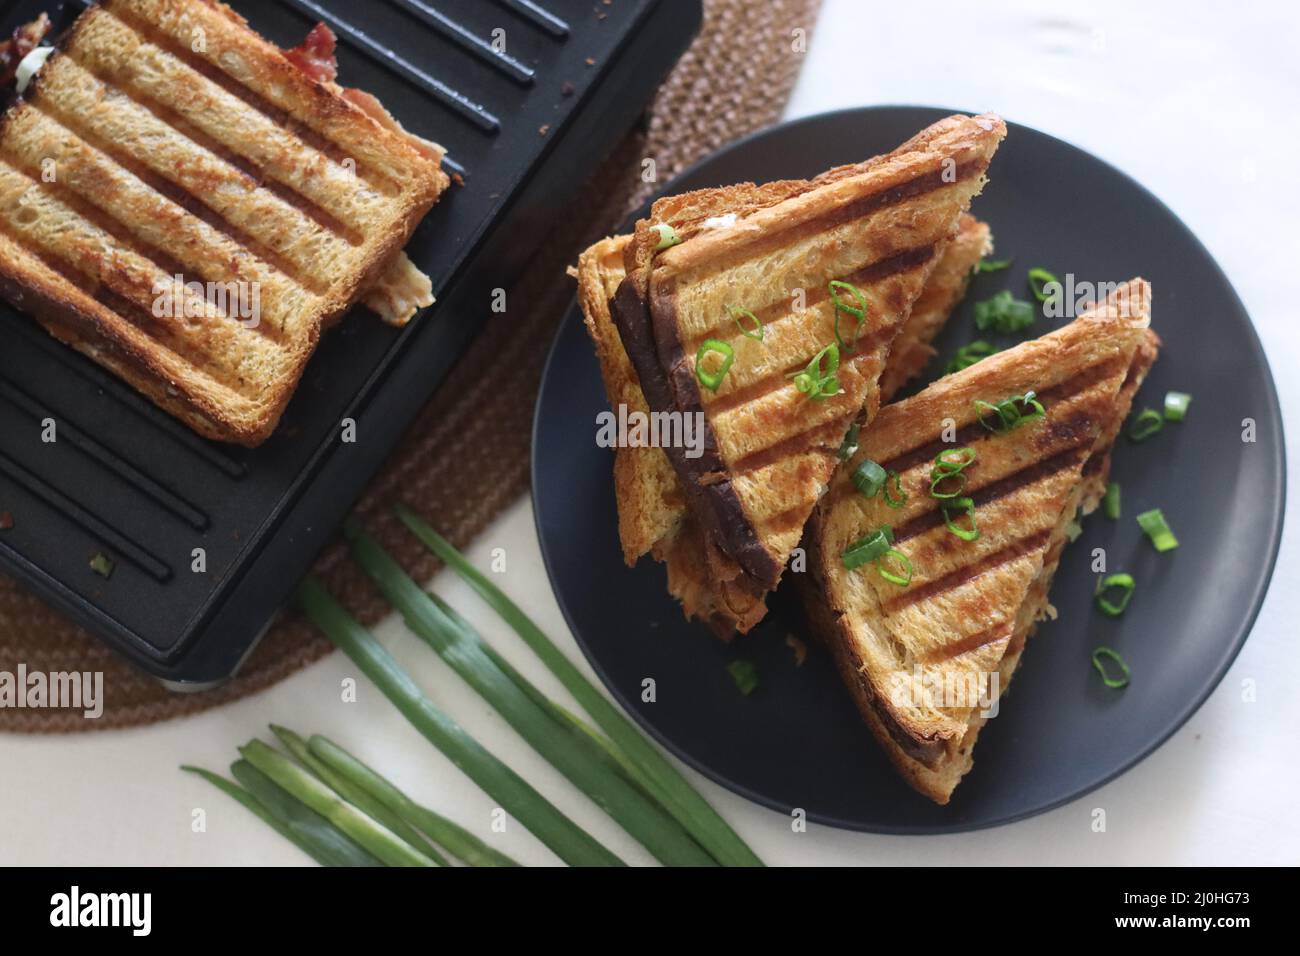 Sandwiches mit Frischkäse und Speck. Gegrillte Sandwiches mit einer Aufstrich aus einer Kombination aus Frischkäse, grünen Zwiebeln, Orangano und Chili Flocken. Schuss mit Witz Stockfoto